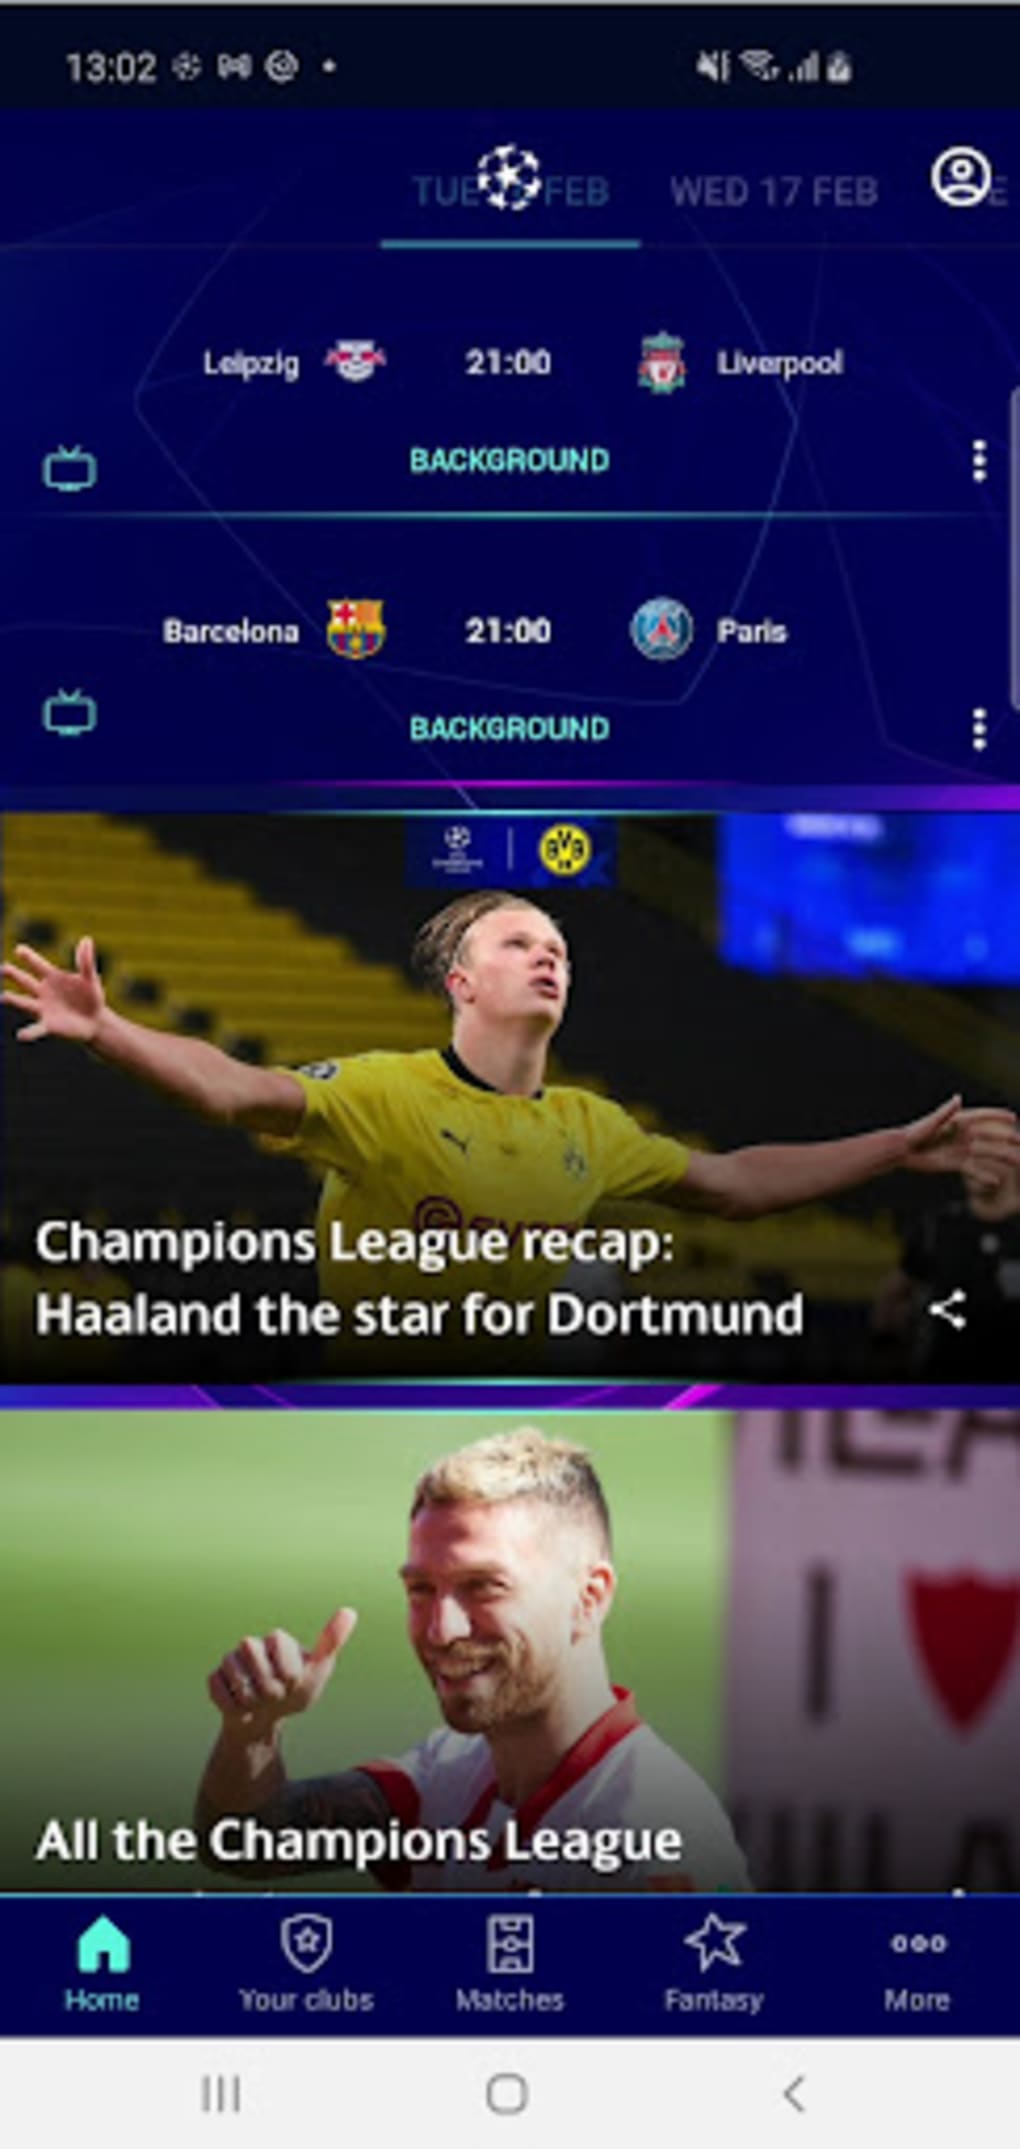 UEFA Champions League APK für Android